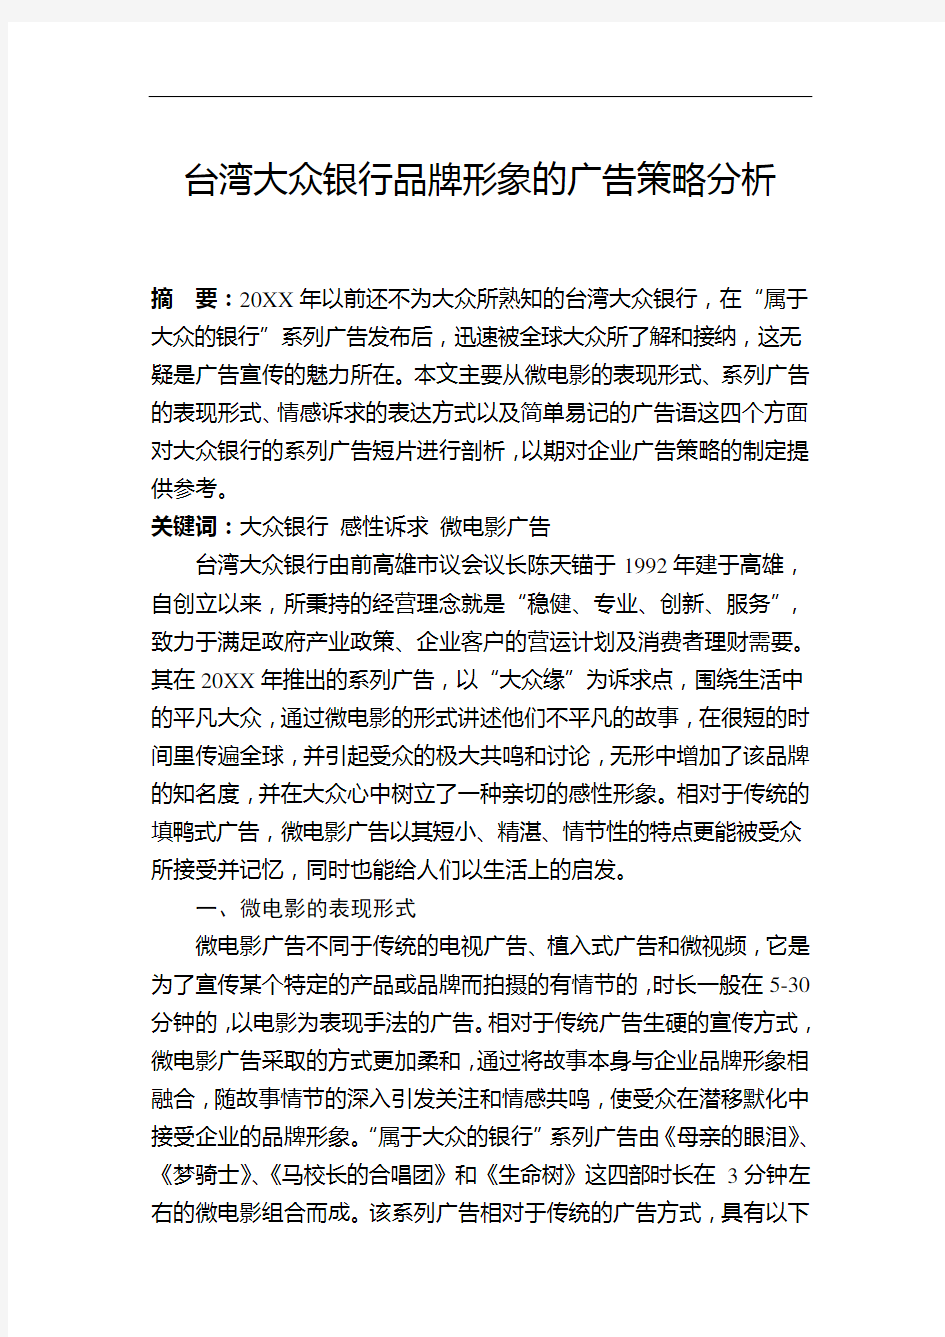 推荐-台湾大众银行的企业形象广告策略分析 精品